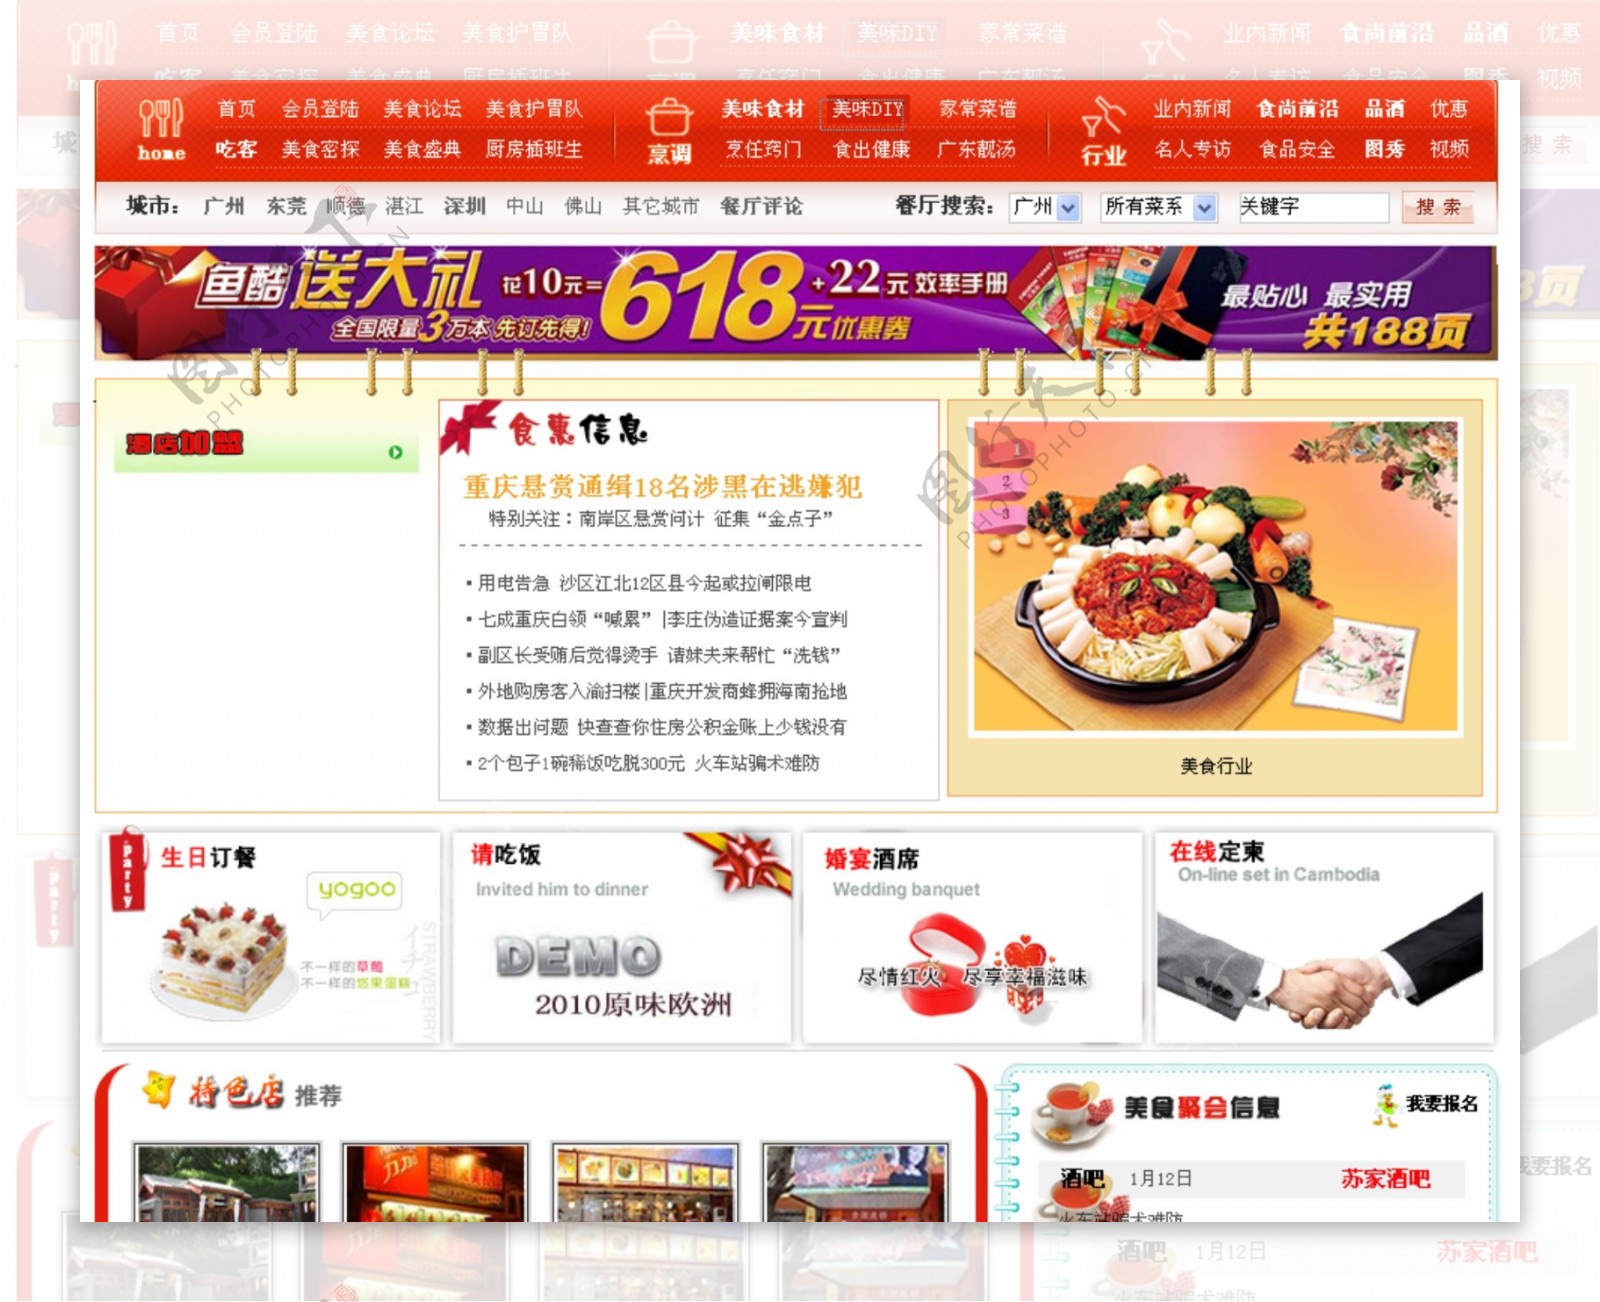 网页设计模版美食网站中文网站图片